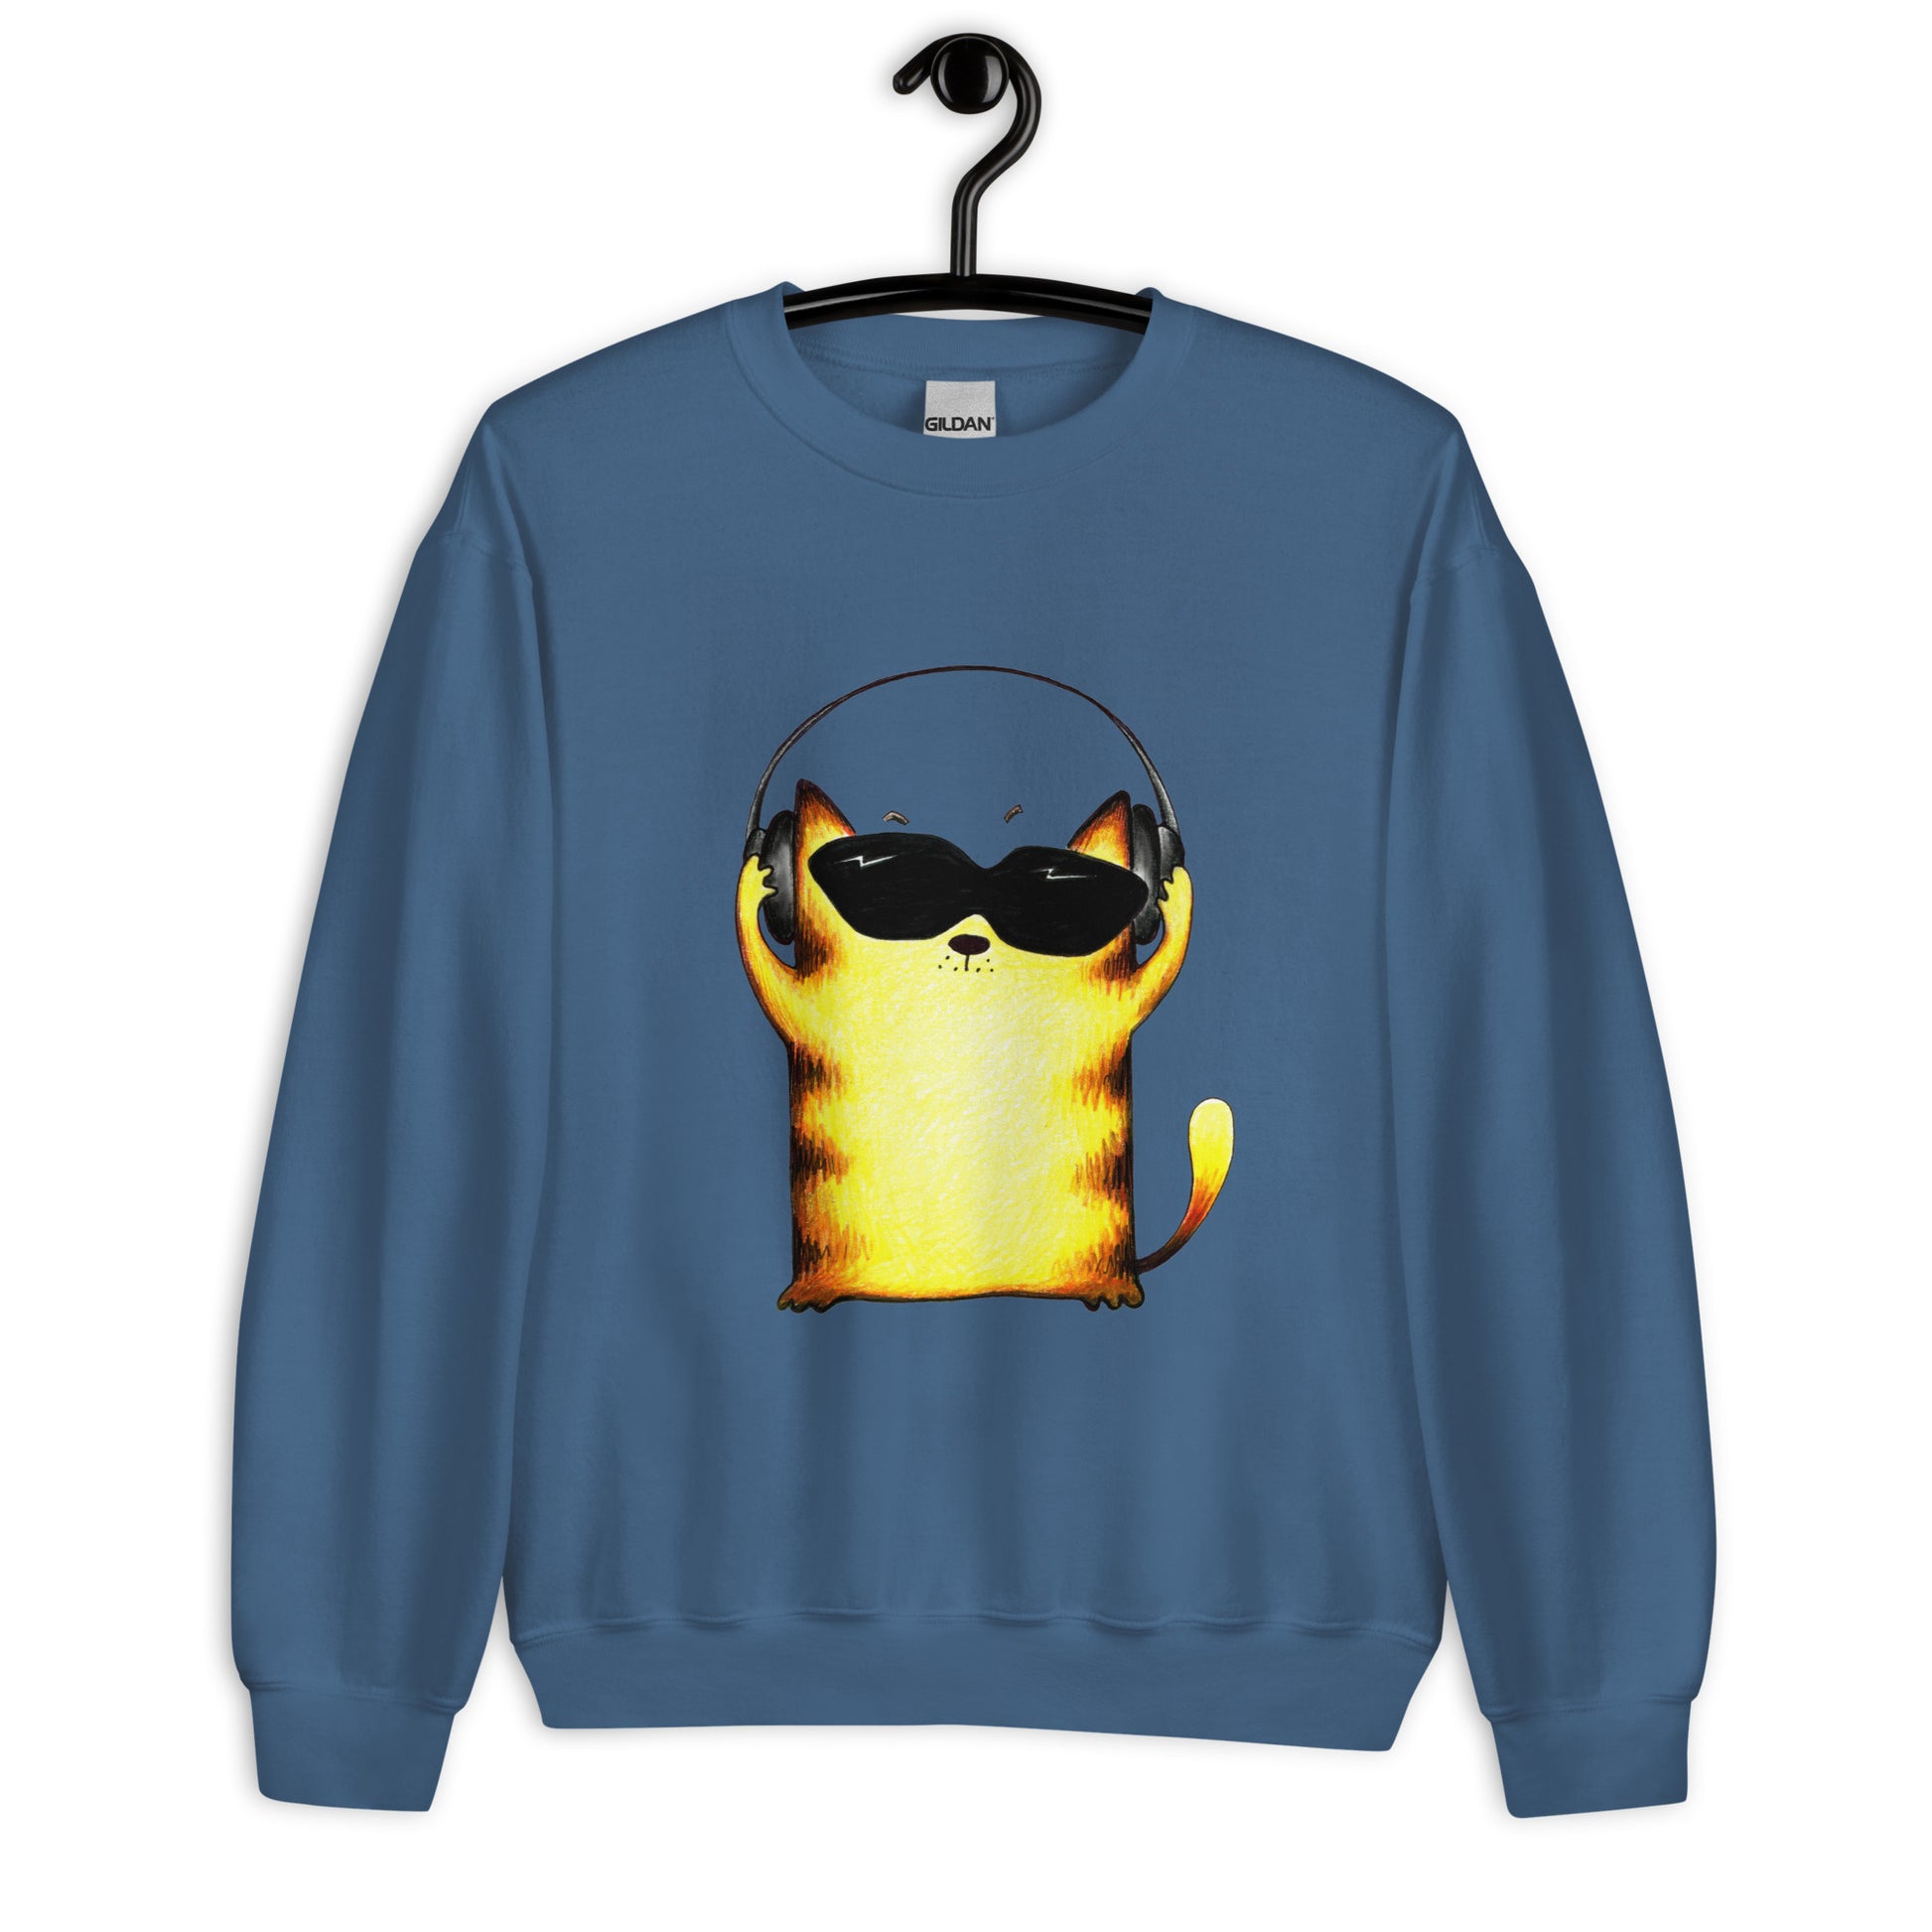 Blue men's sweatshirt with yellow cats and headphones